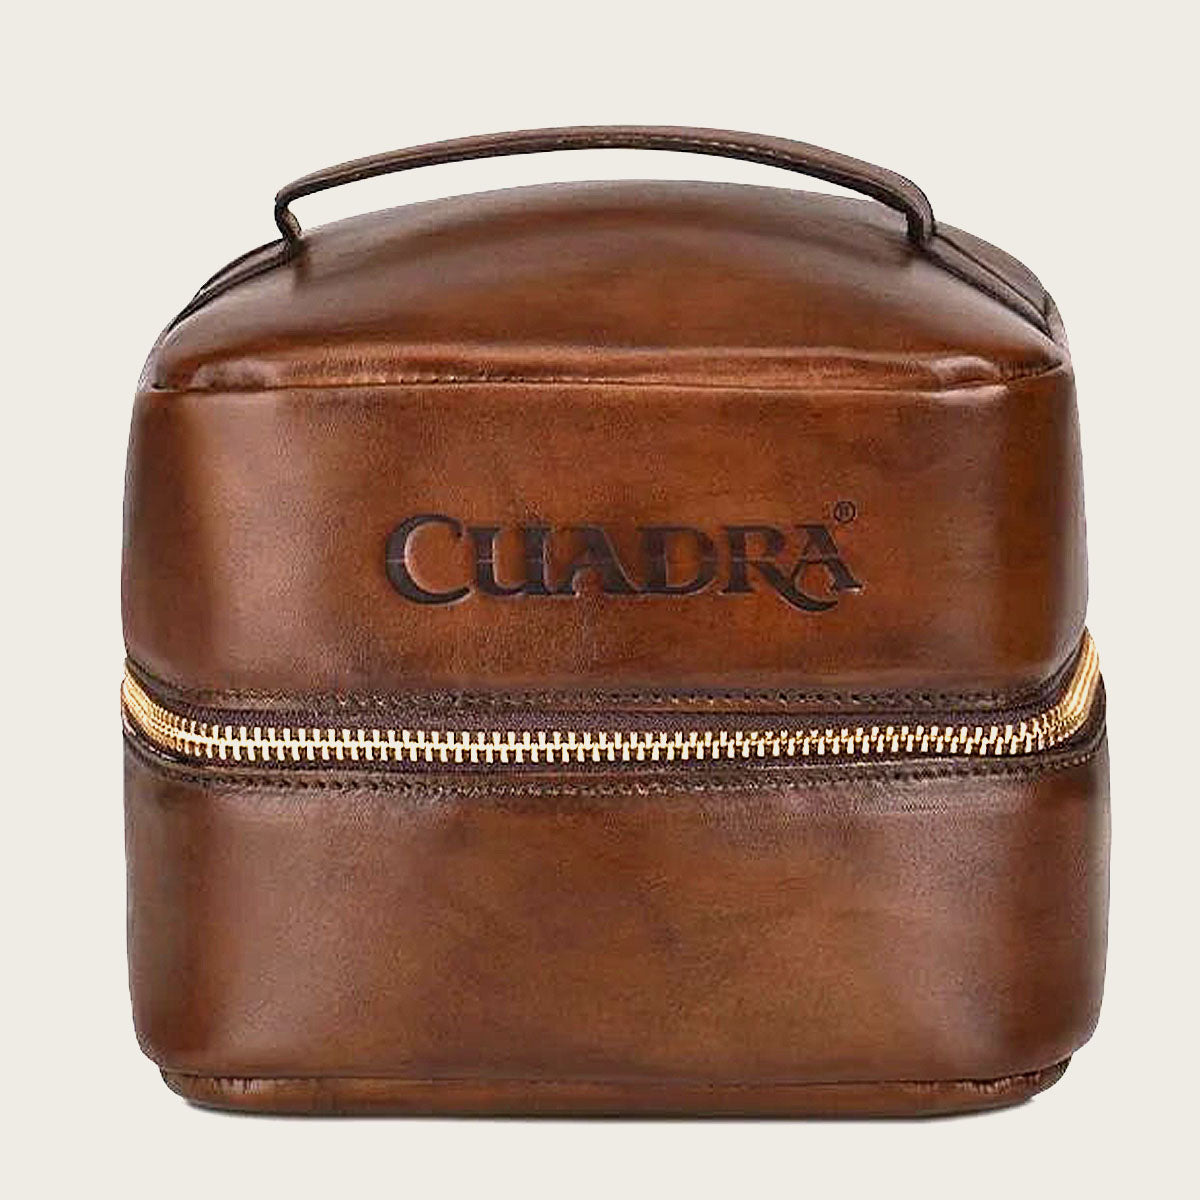 Cuadra, men's bags - Cuadra Shop